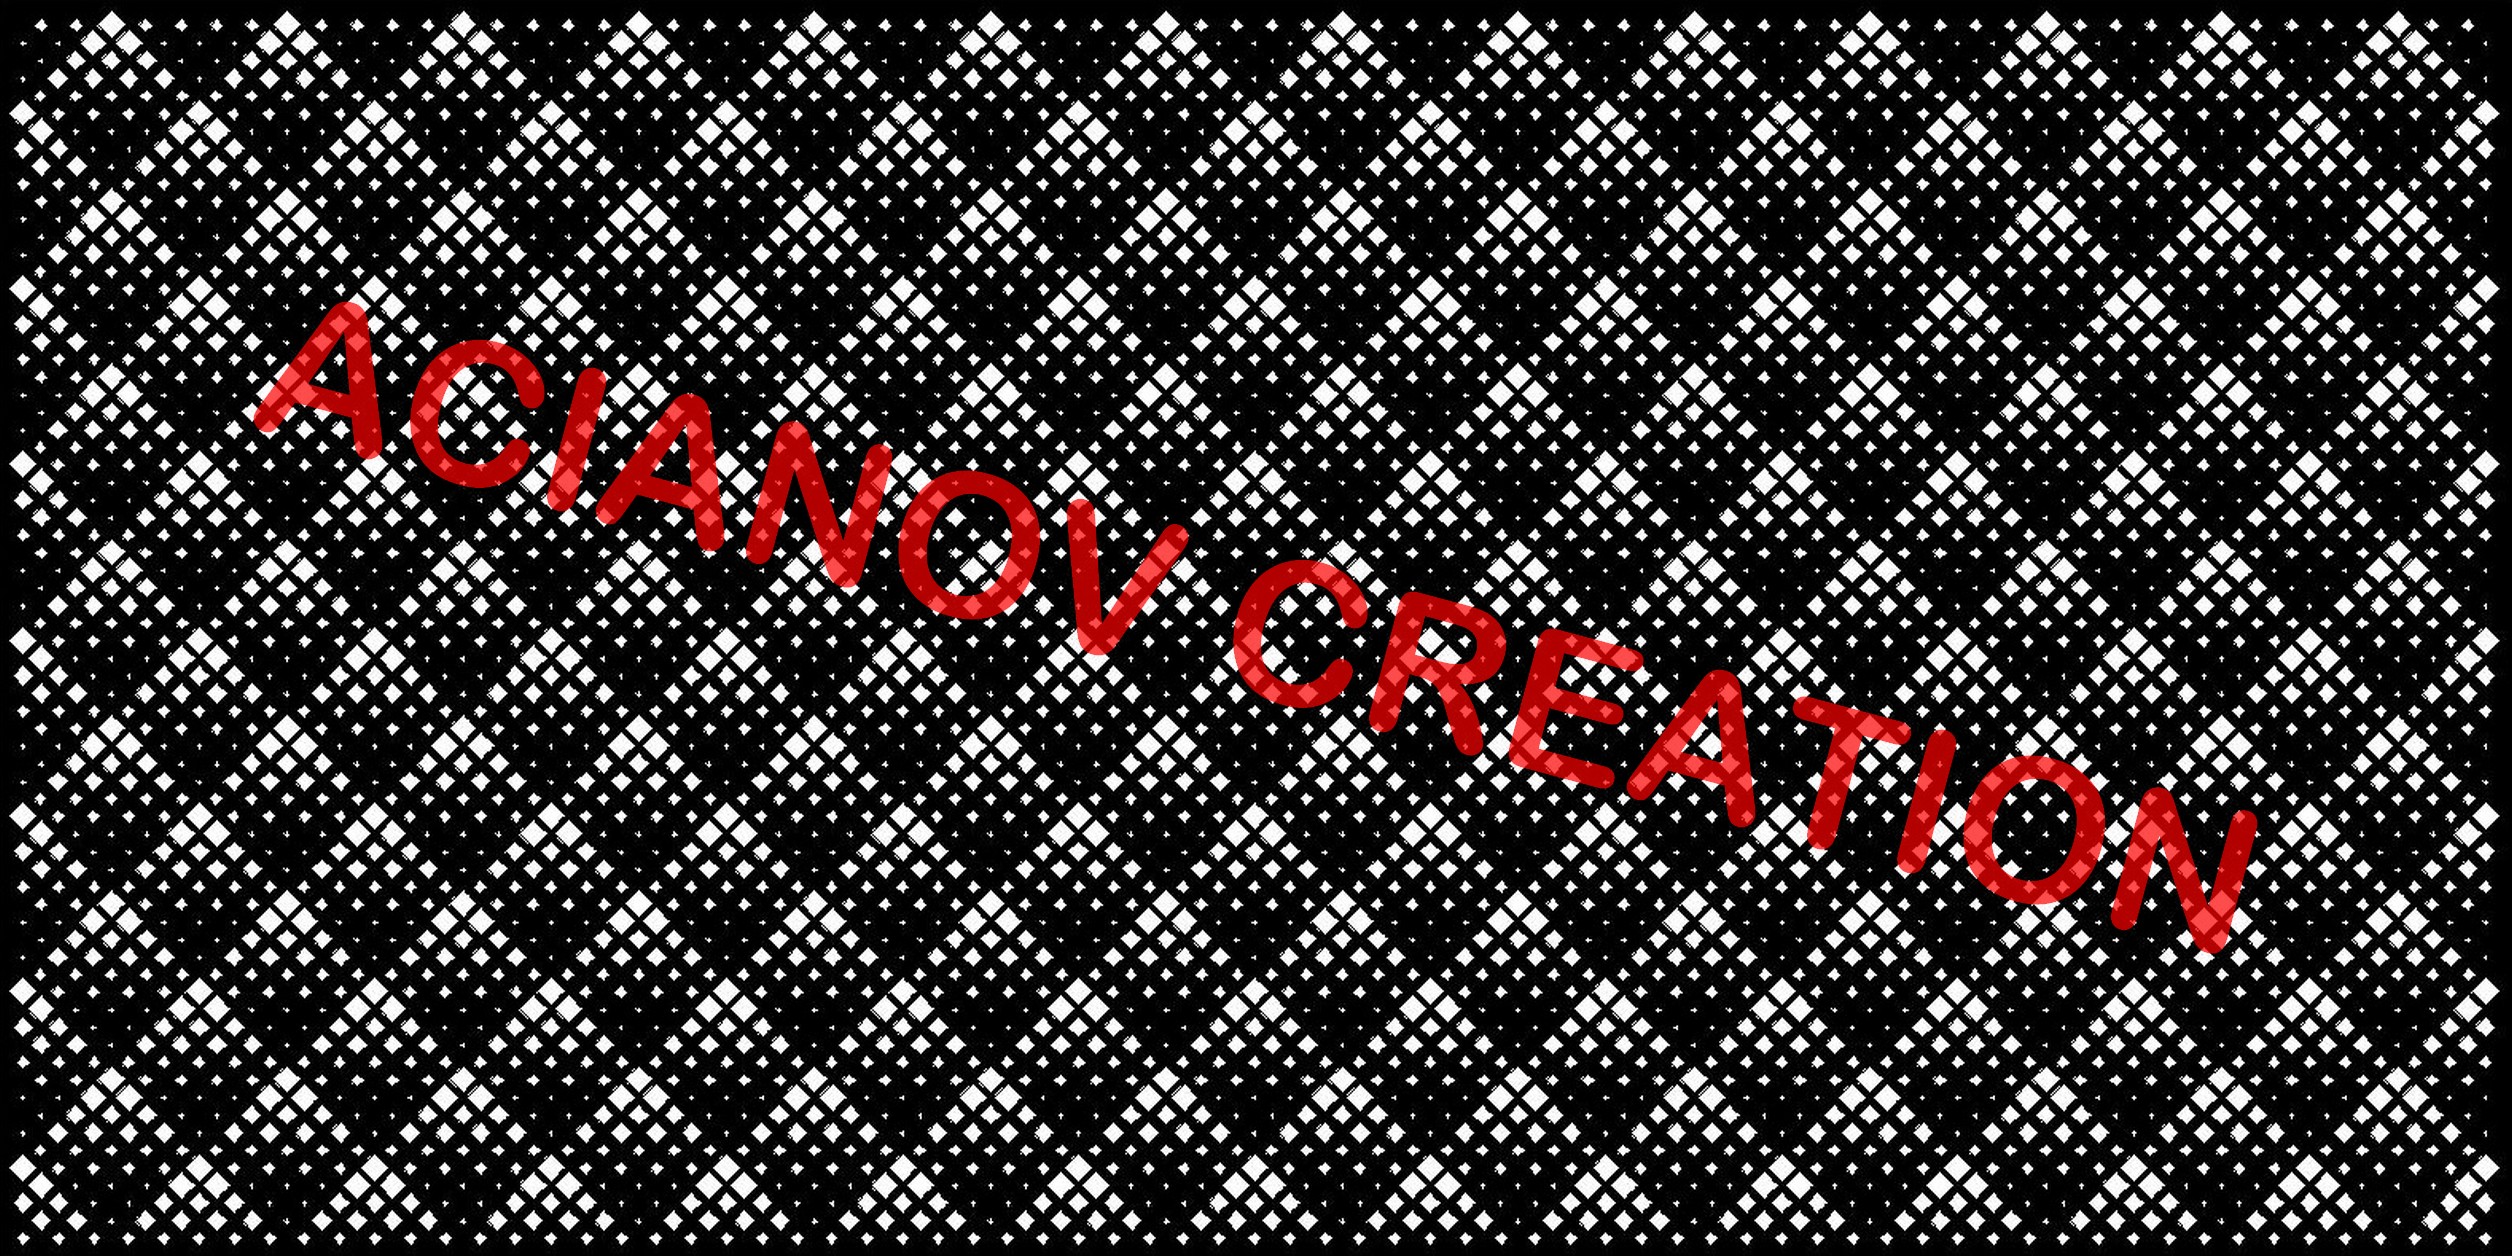 cervin acianov creation logo